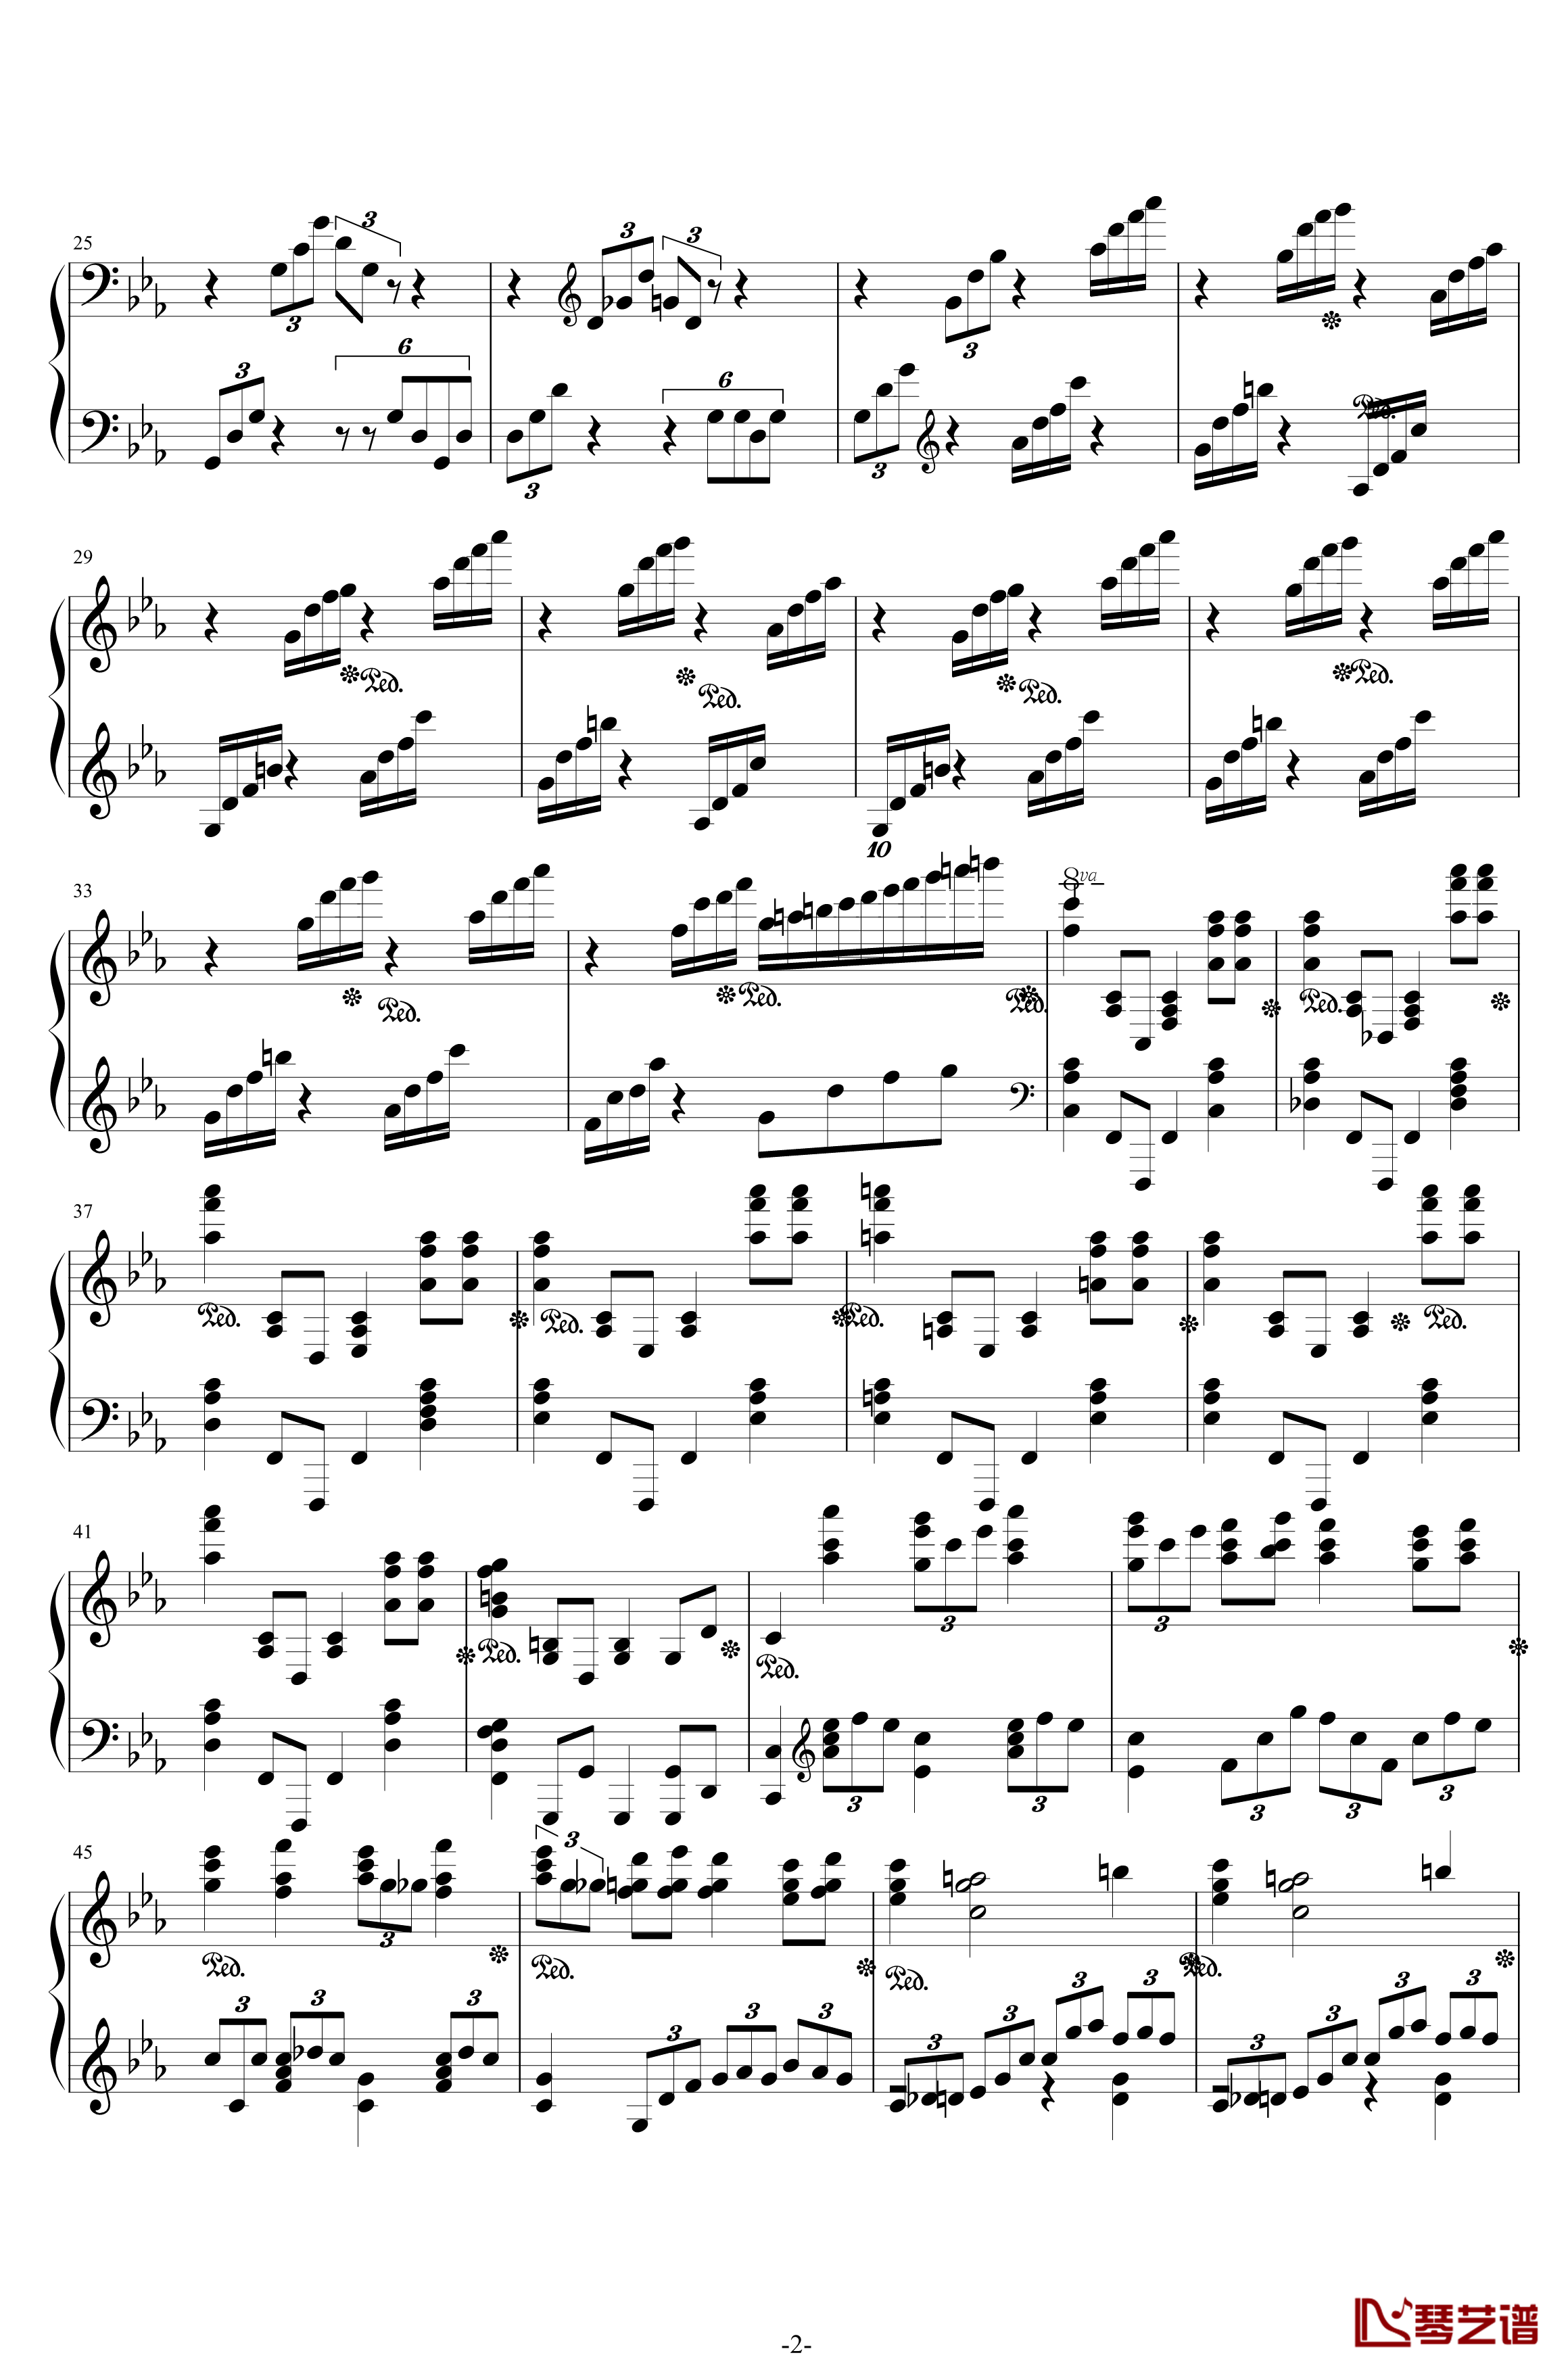 第二钢琴协奏曲钢琴谱-第三乐章独奏版-c小调-拉赫马尼若夫2